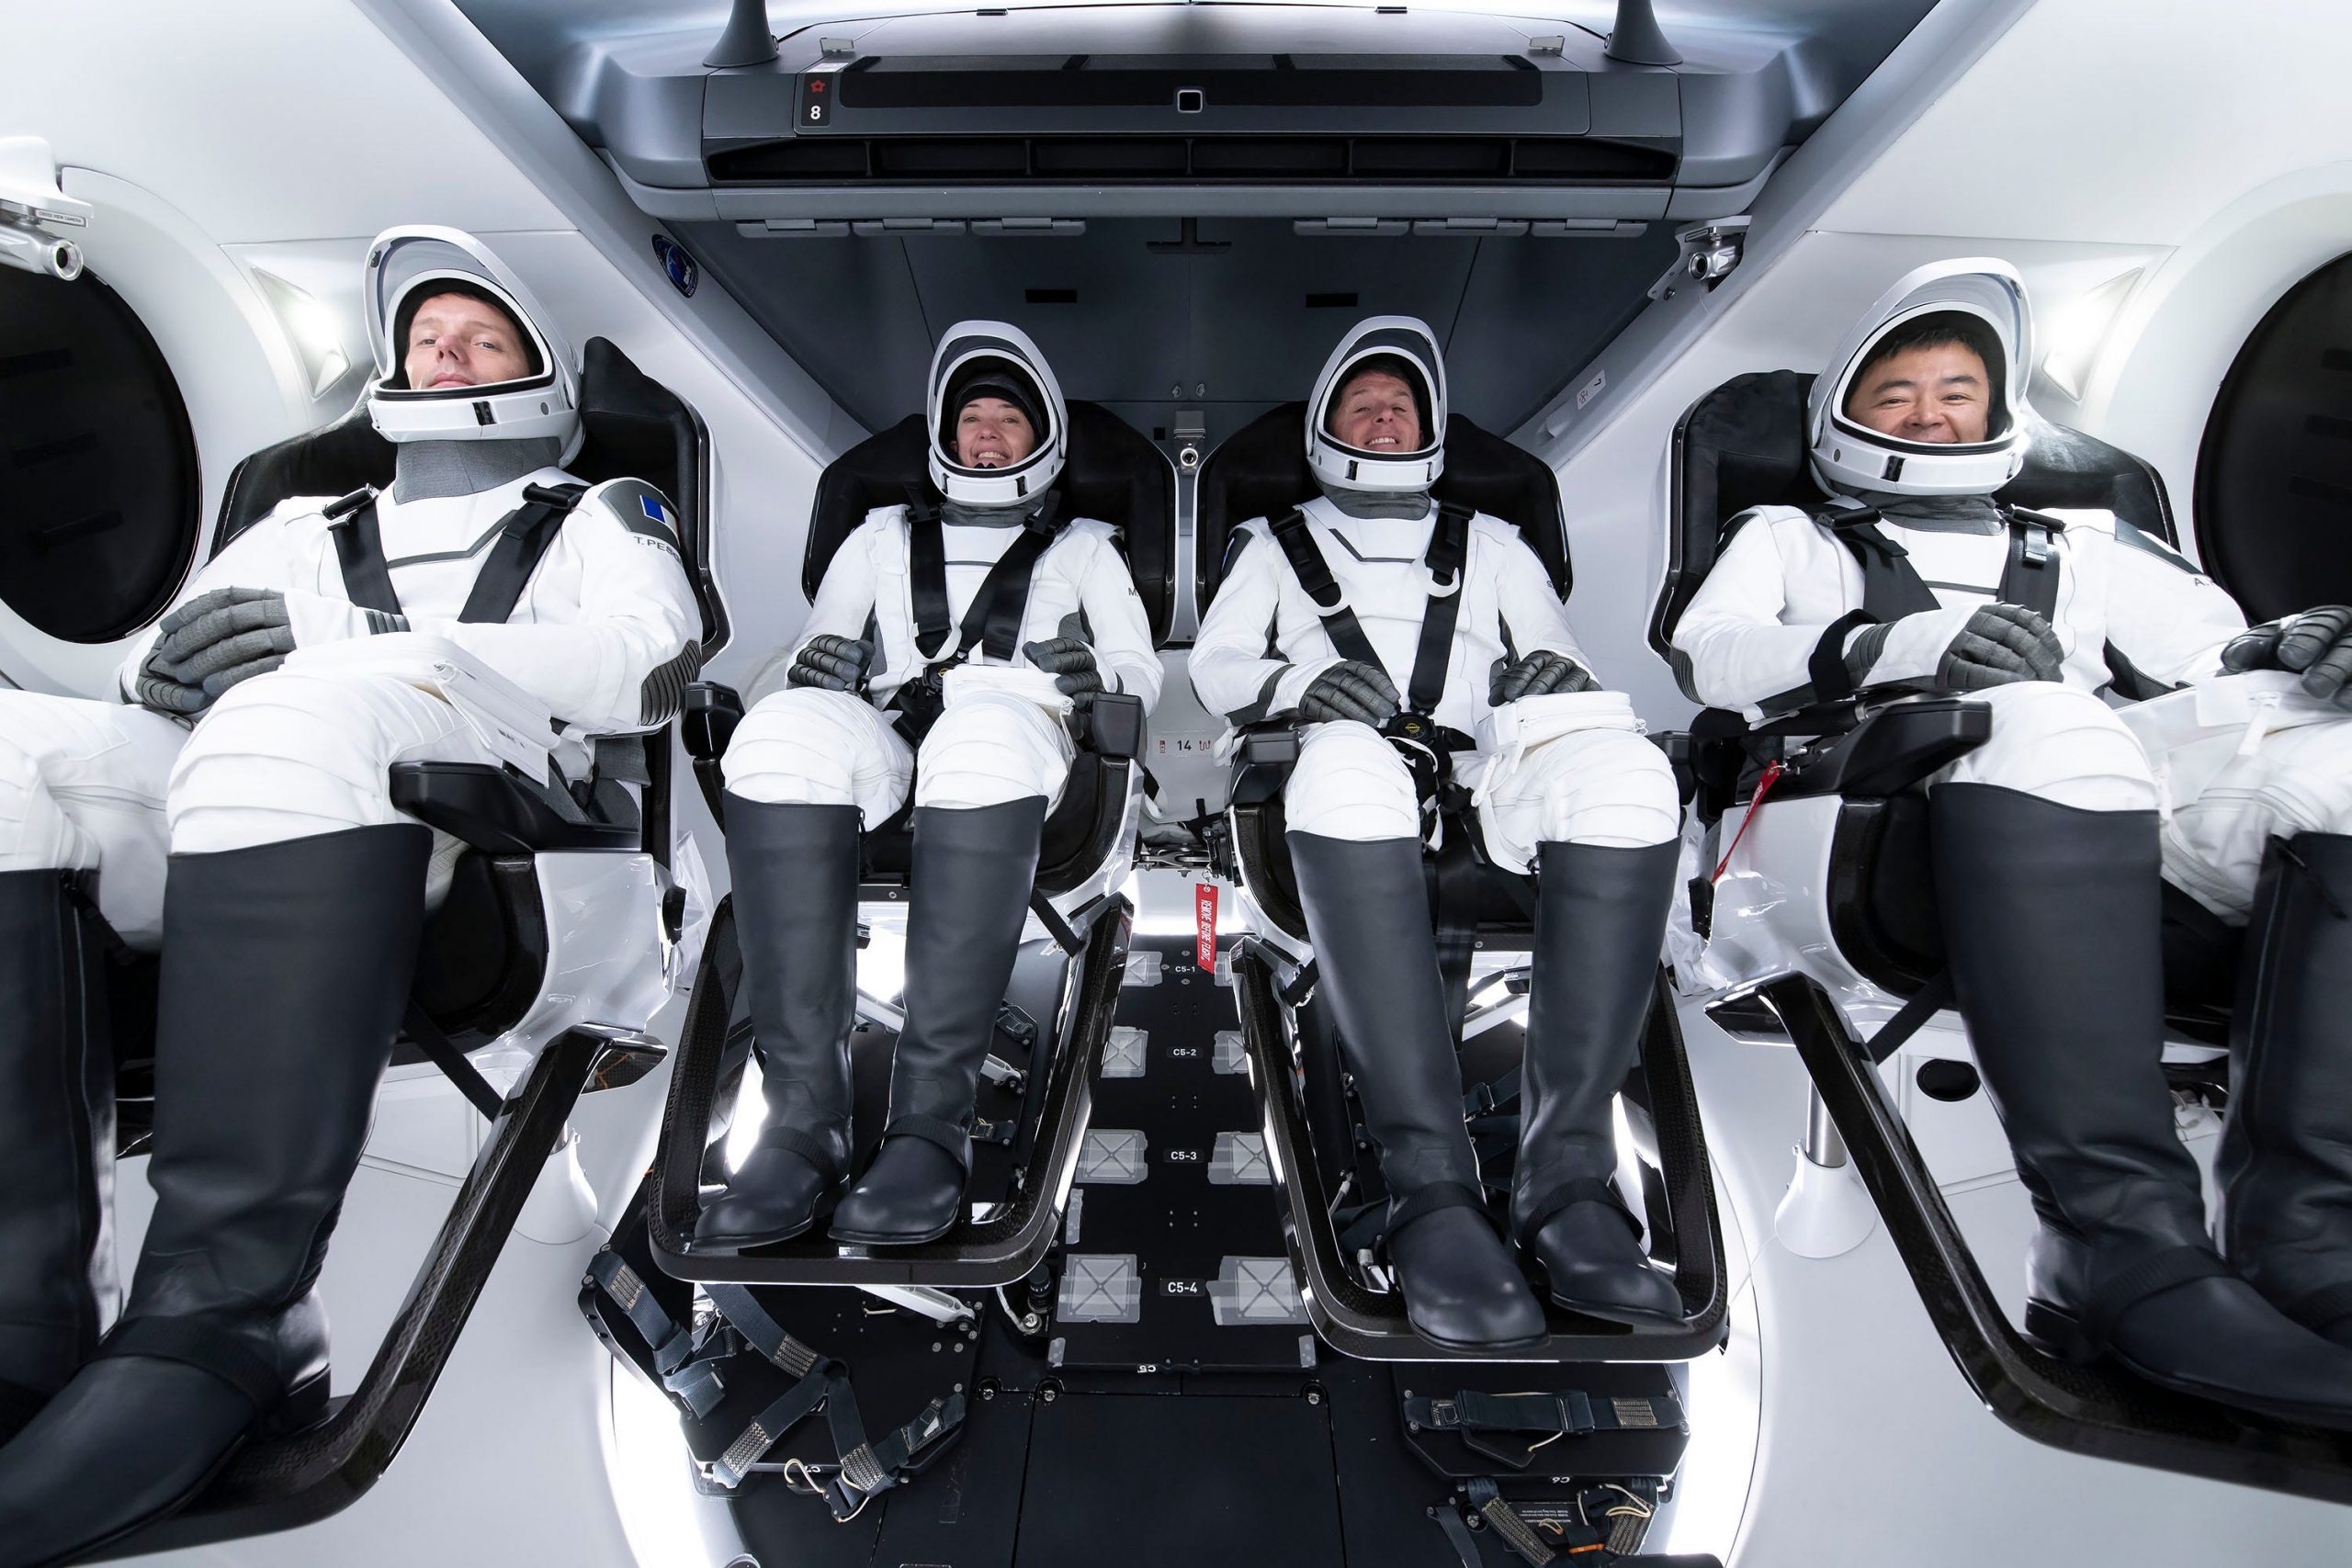 crew 2 astronauts crew dragon spaceship